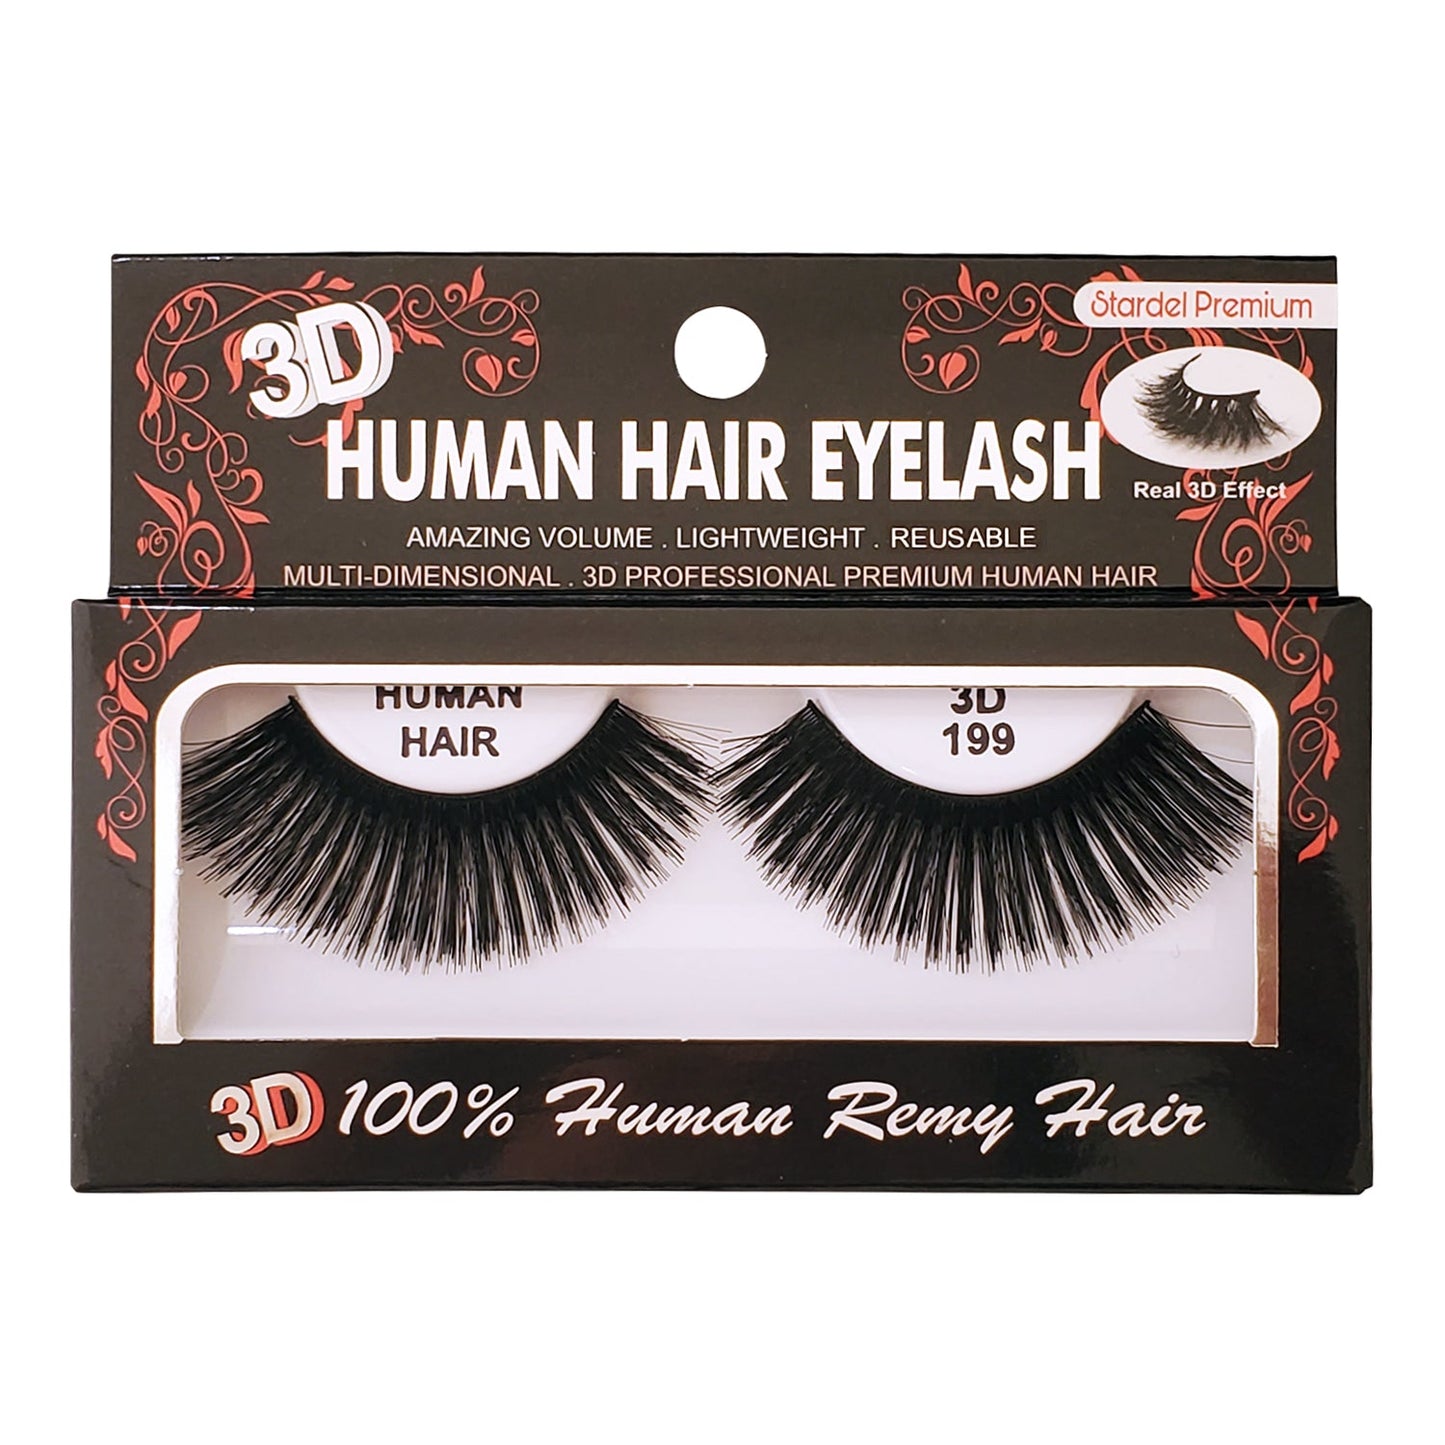 #3D 199 - 100% Human Remy Hair Eyelash